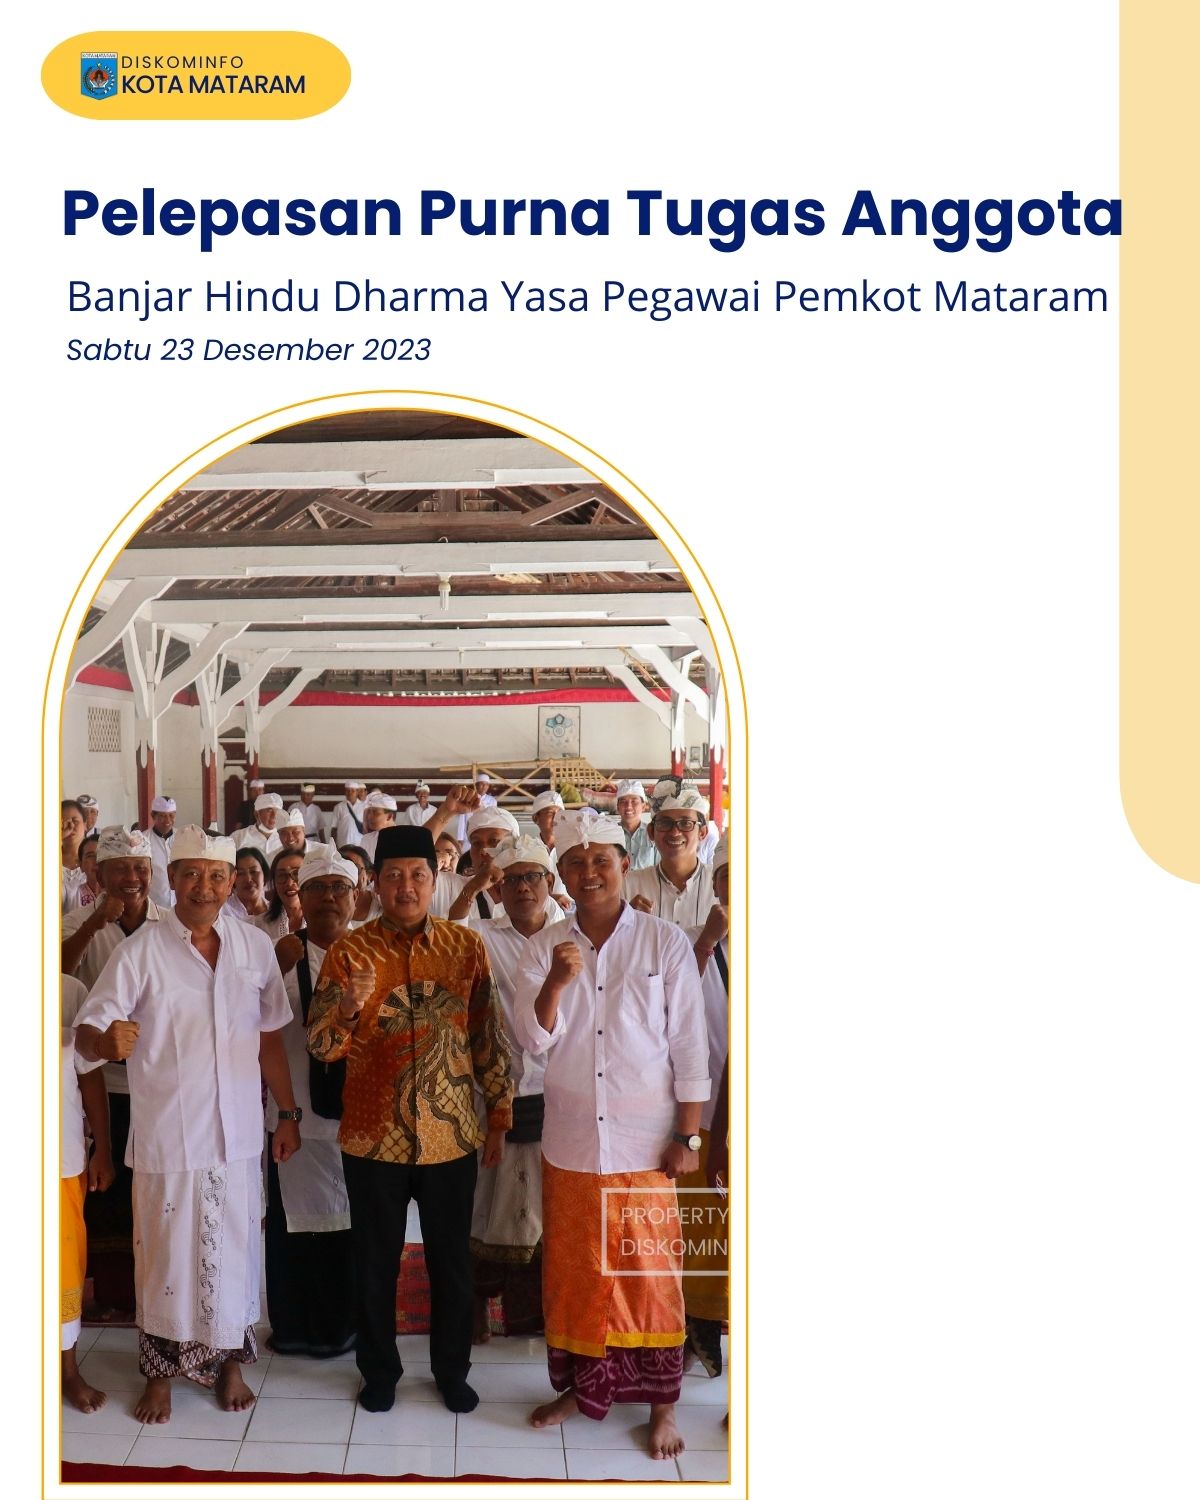 Pelepasan Purna Tugas Anggota Banjar Hindu Dharma Yasa Pegawai Pemkot Mataram